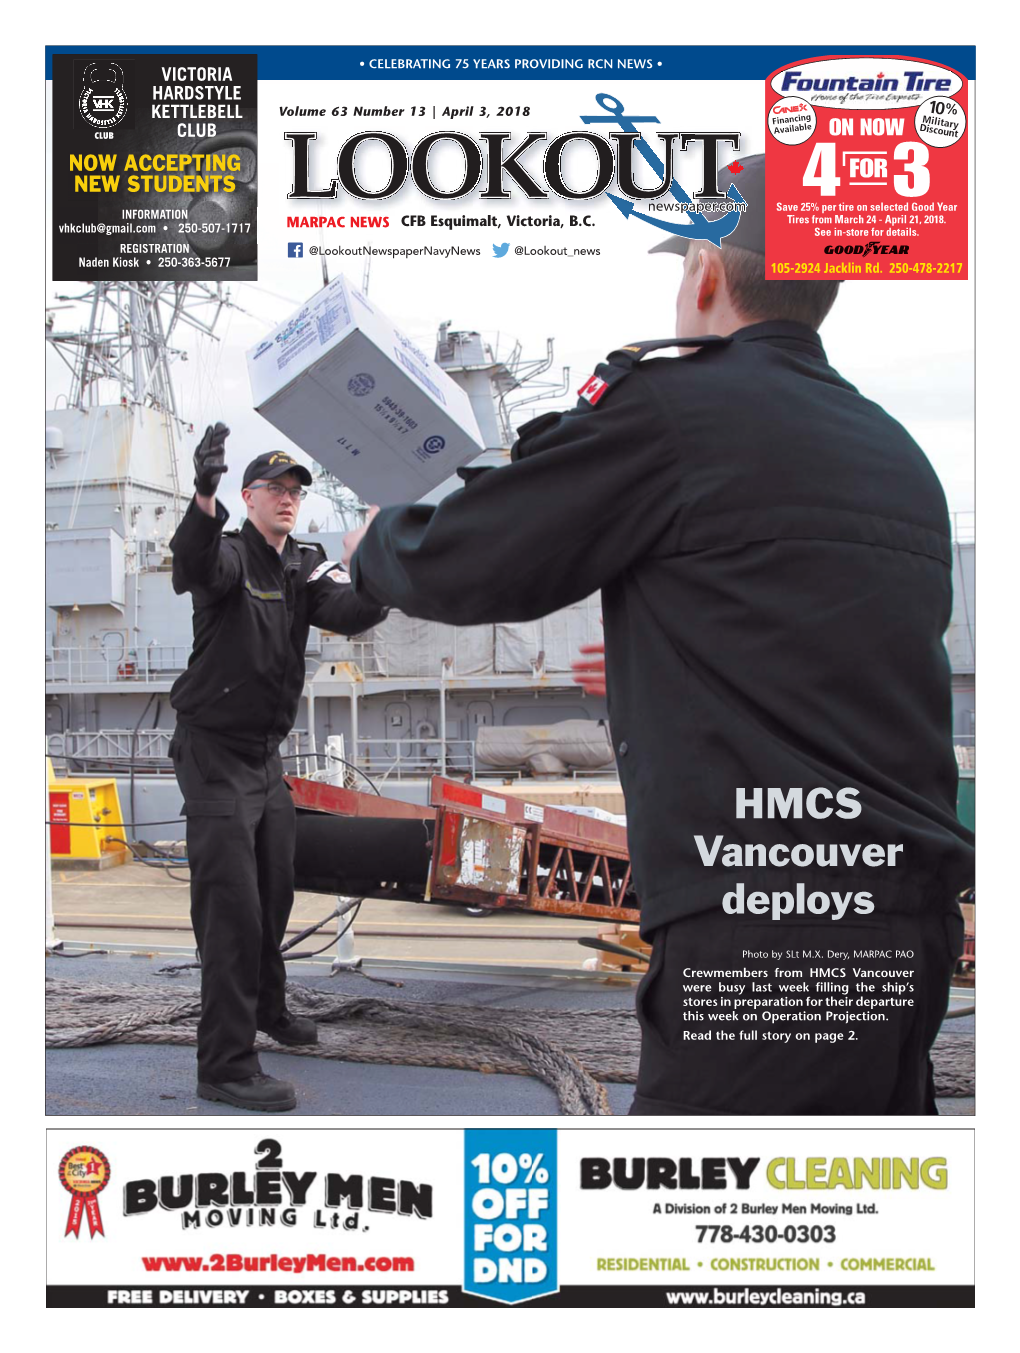 HMCS Vancouver Deploys